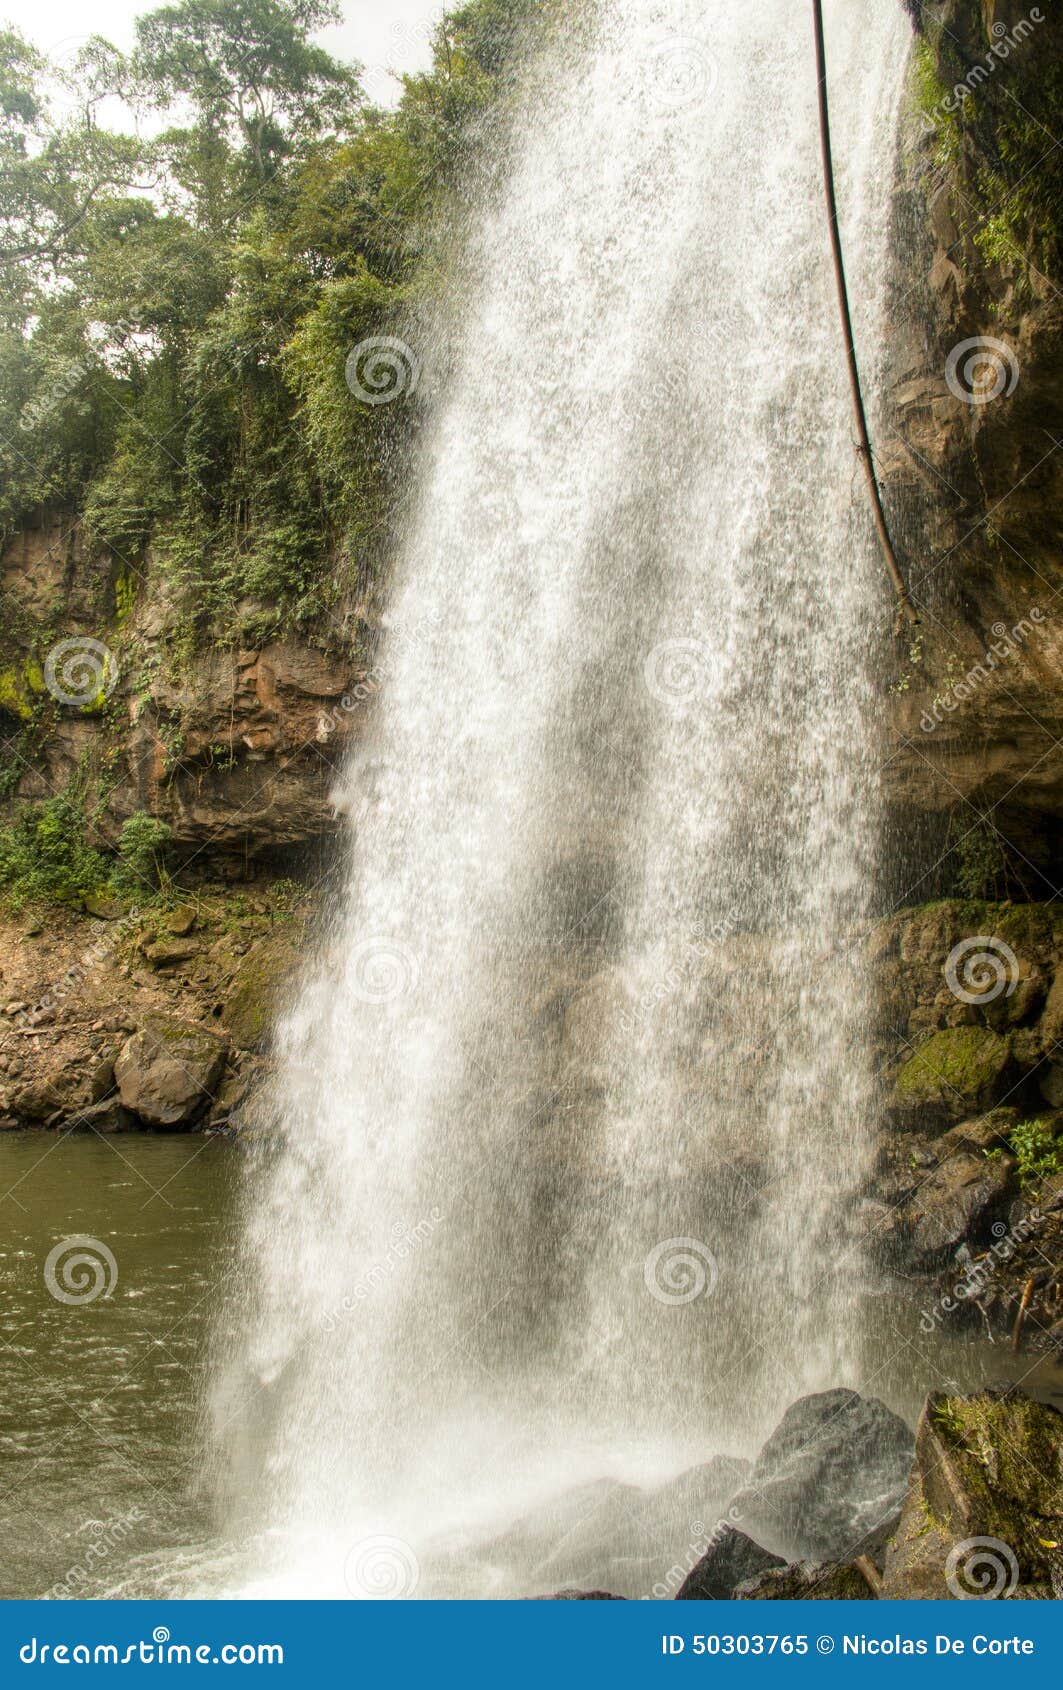 cascada blanca waterfall near matagalpa, nicaragua